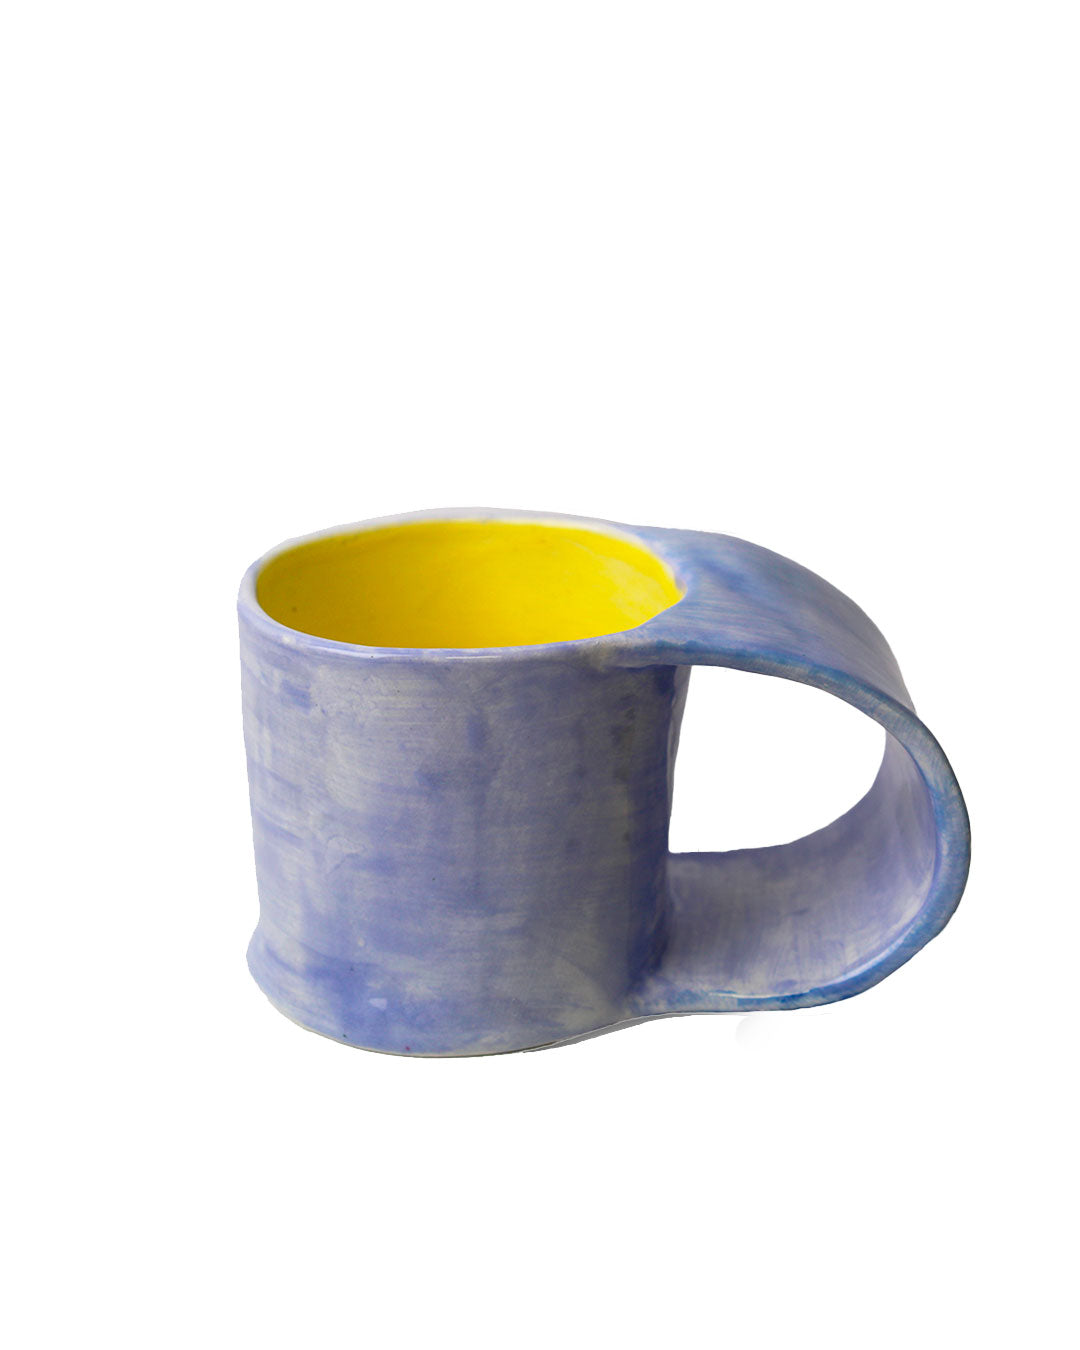 Handmade ceramic mug - Olivia Studio